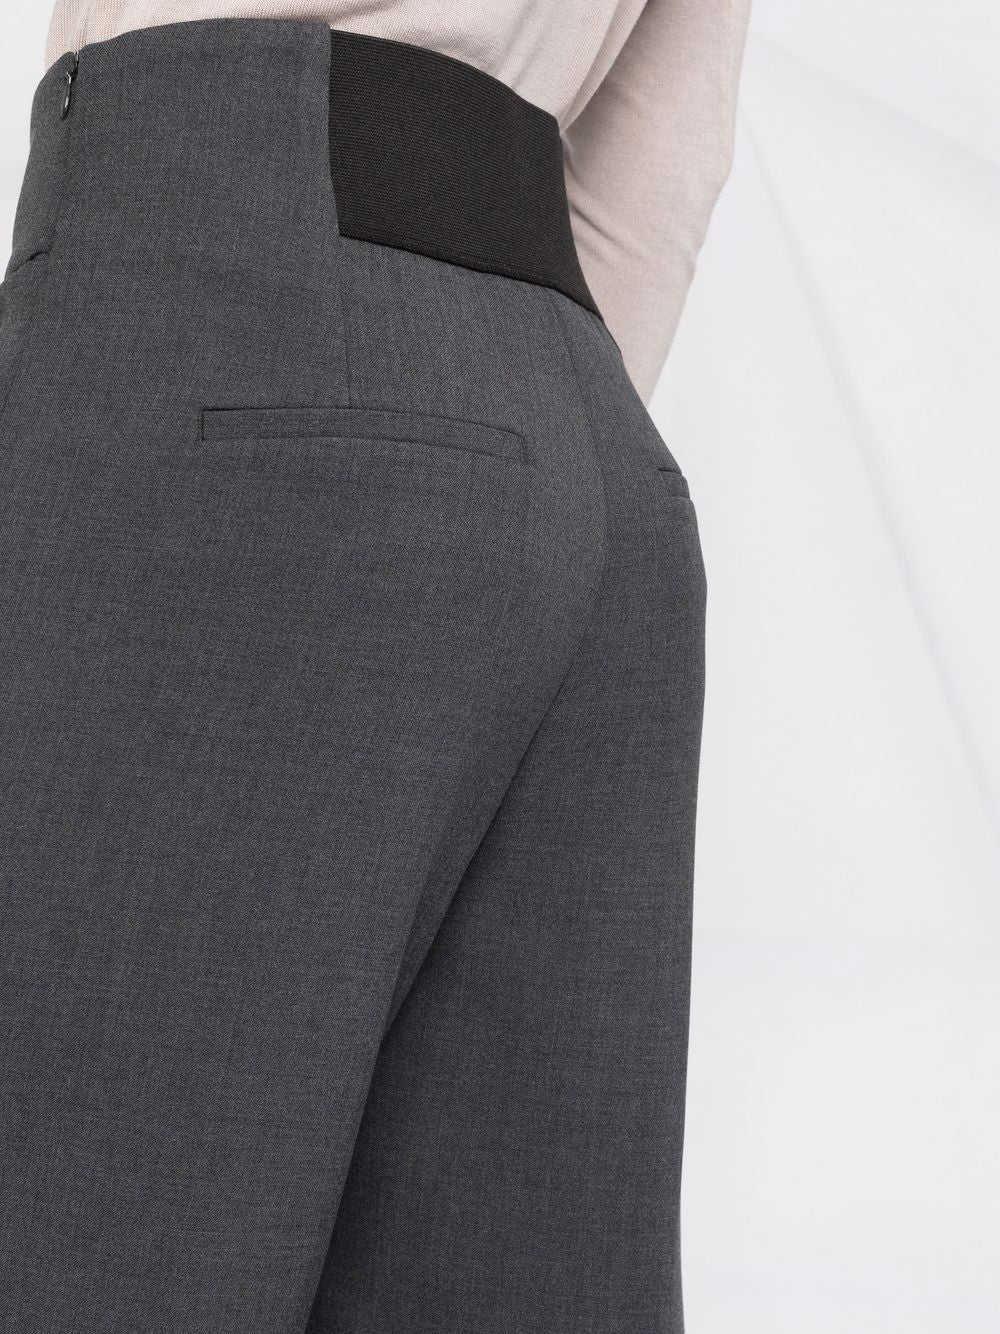 Women's crop mix fiber trousers